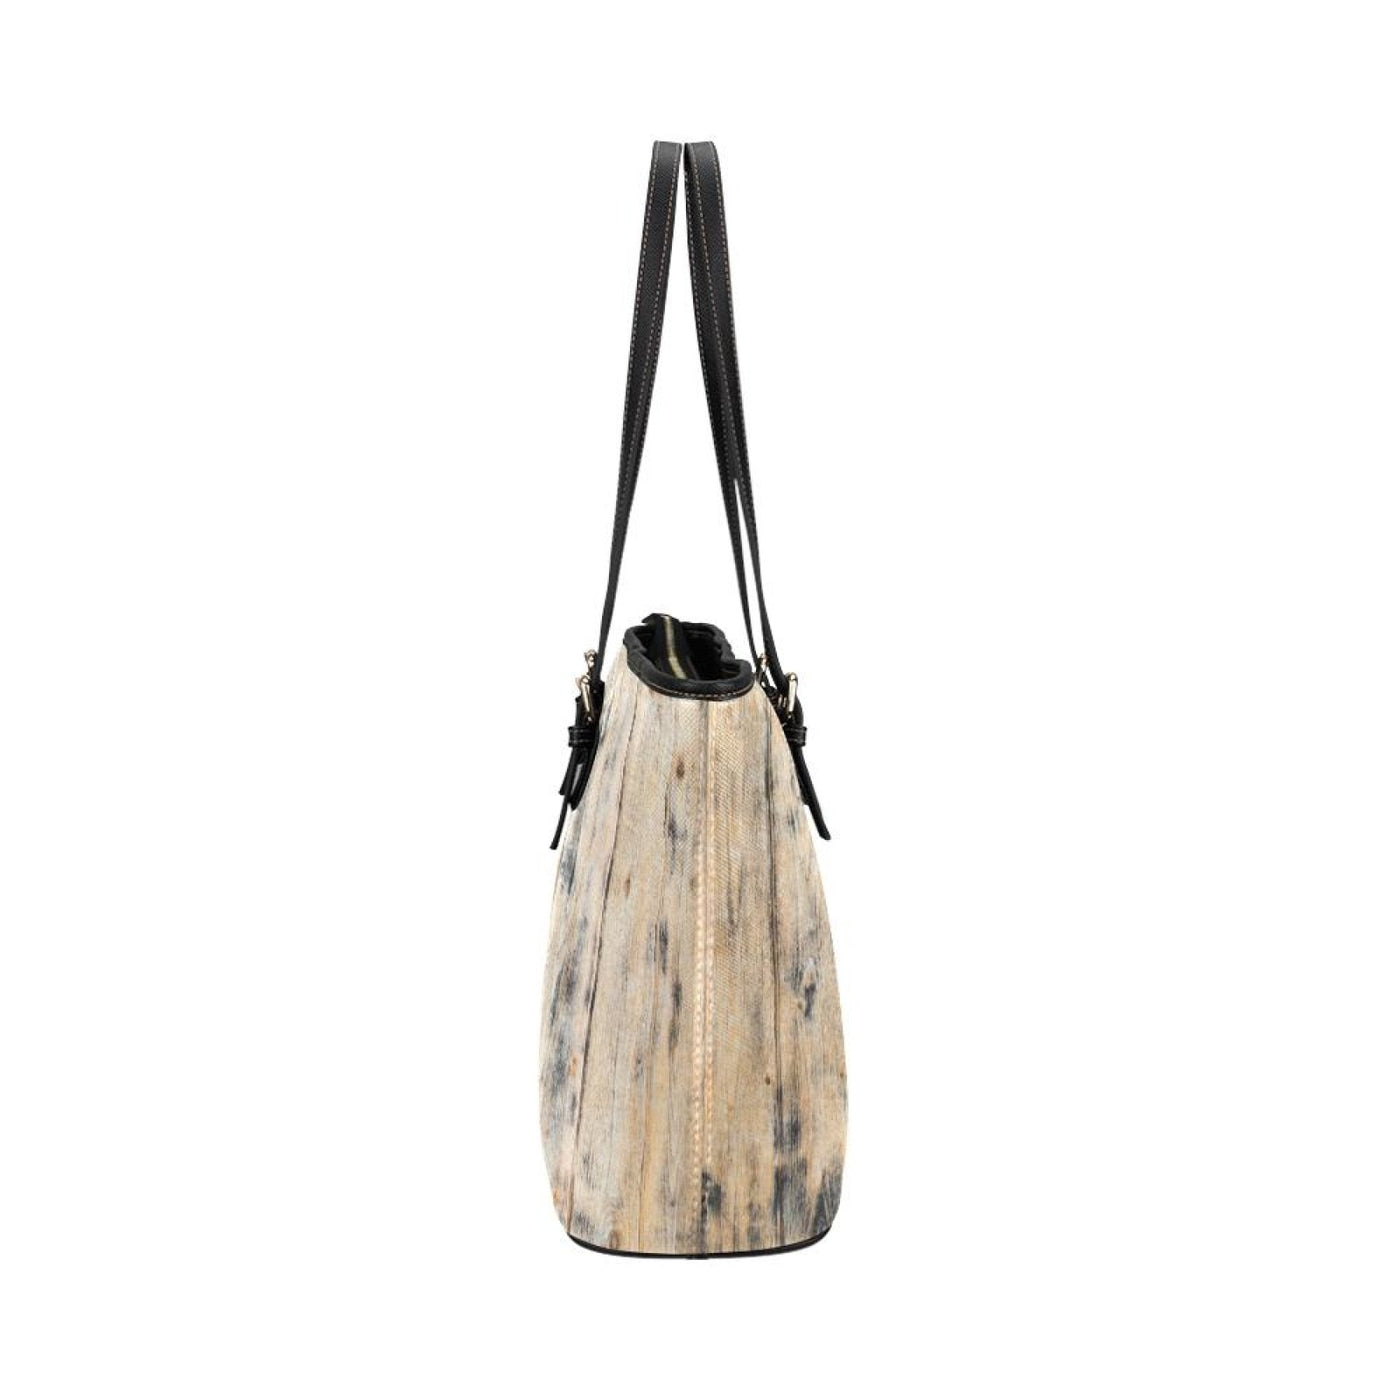 Large Leather Tote Shoulder Bag - Beige Distressed Wood illustration - Bags